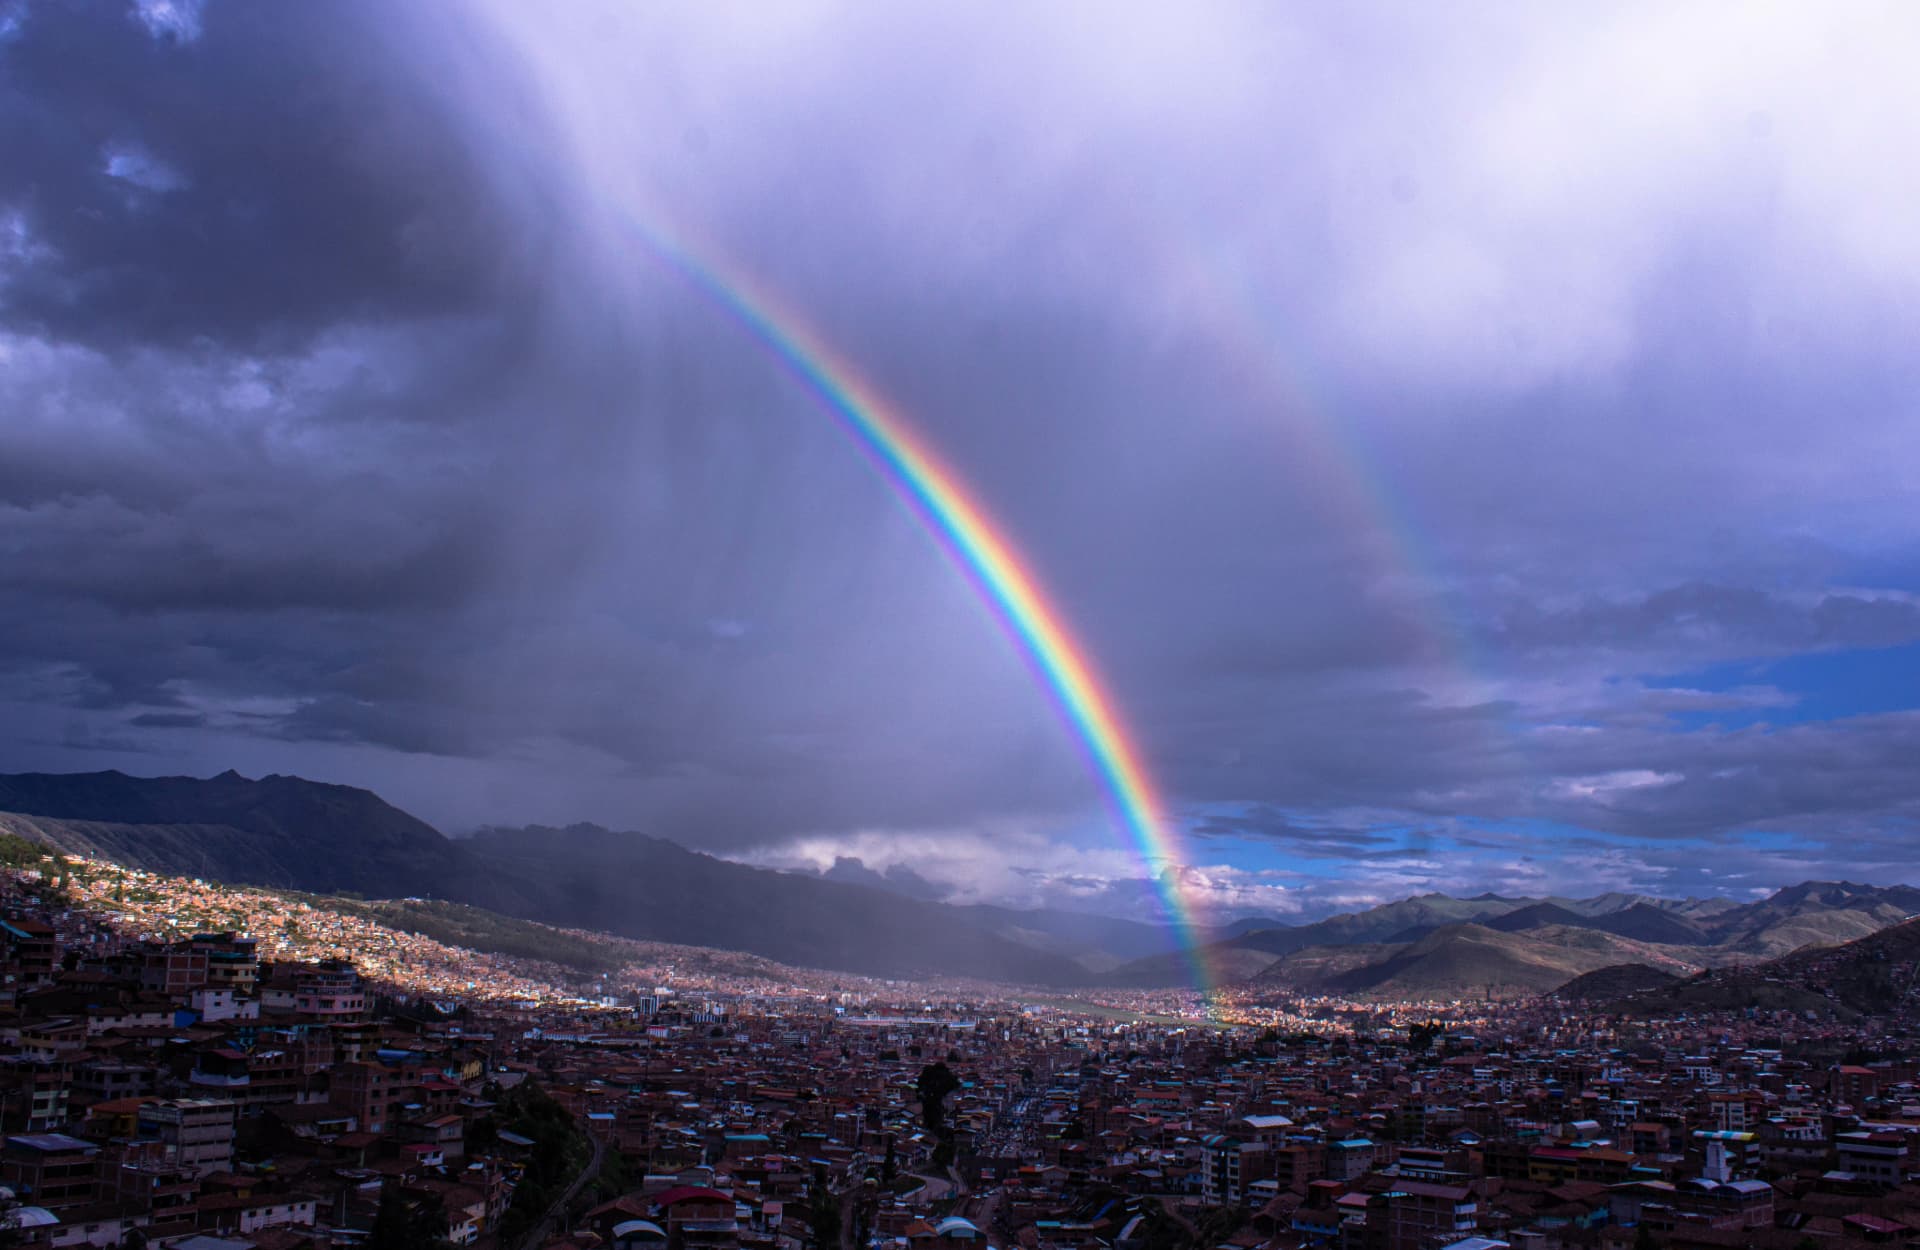 A rainbow over Cusco appears as the rain falls.